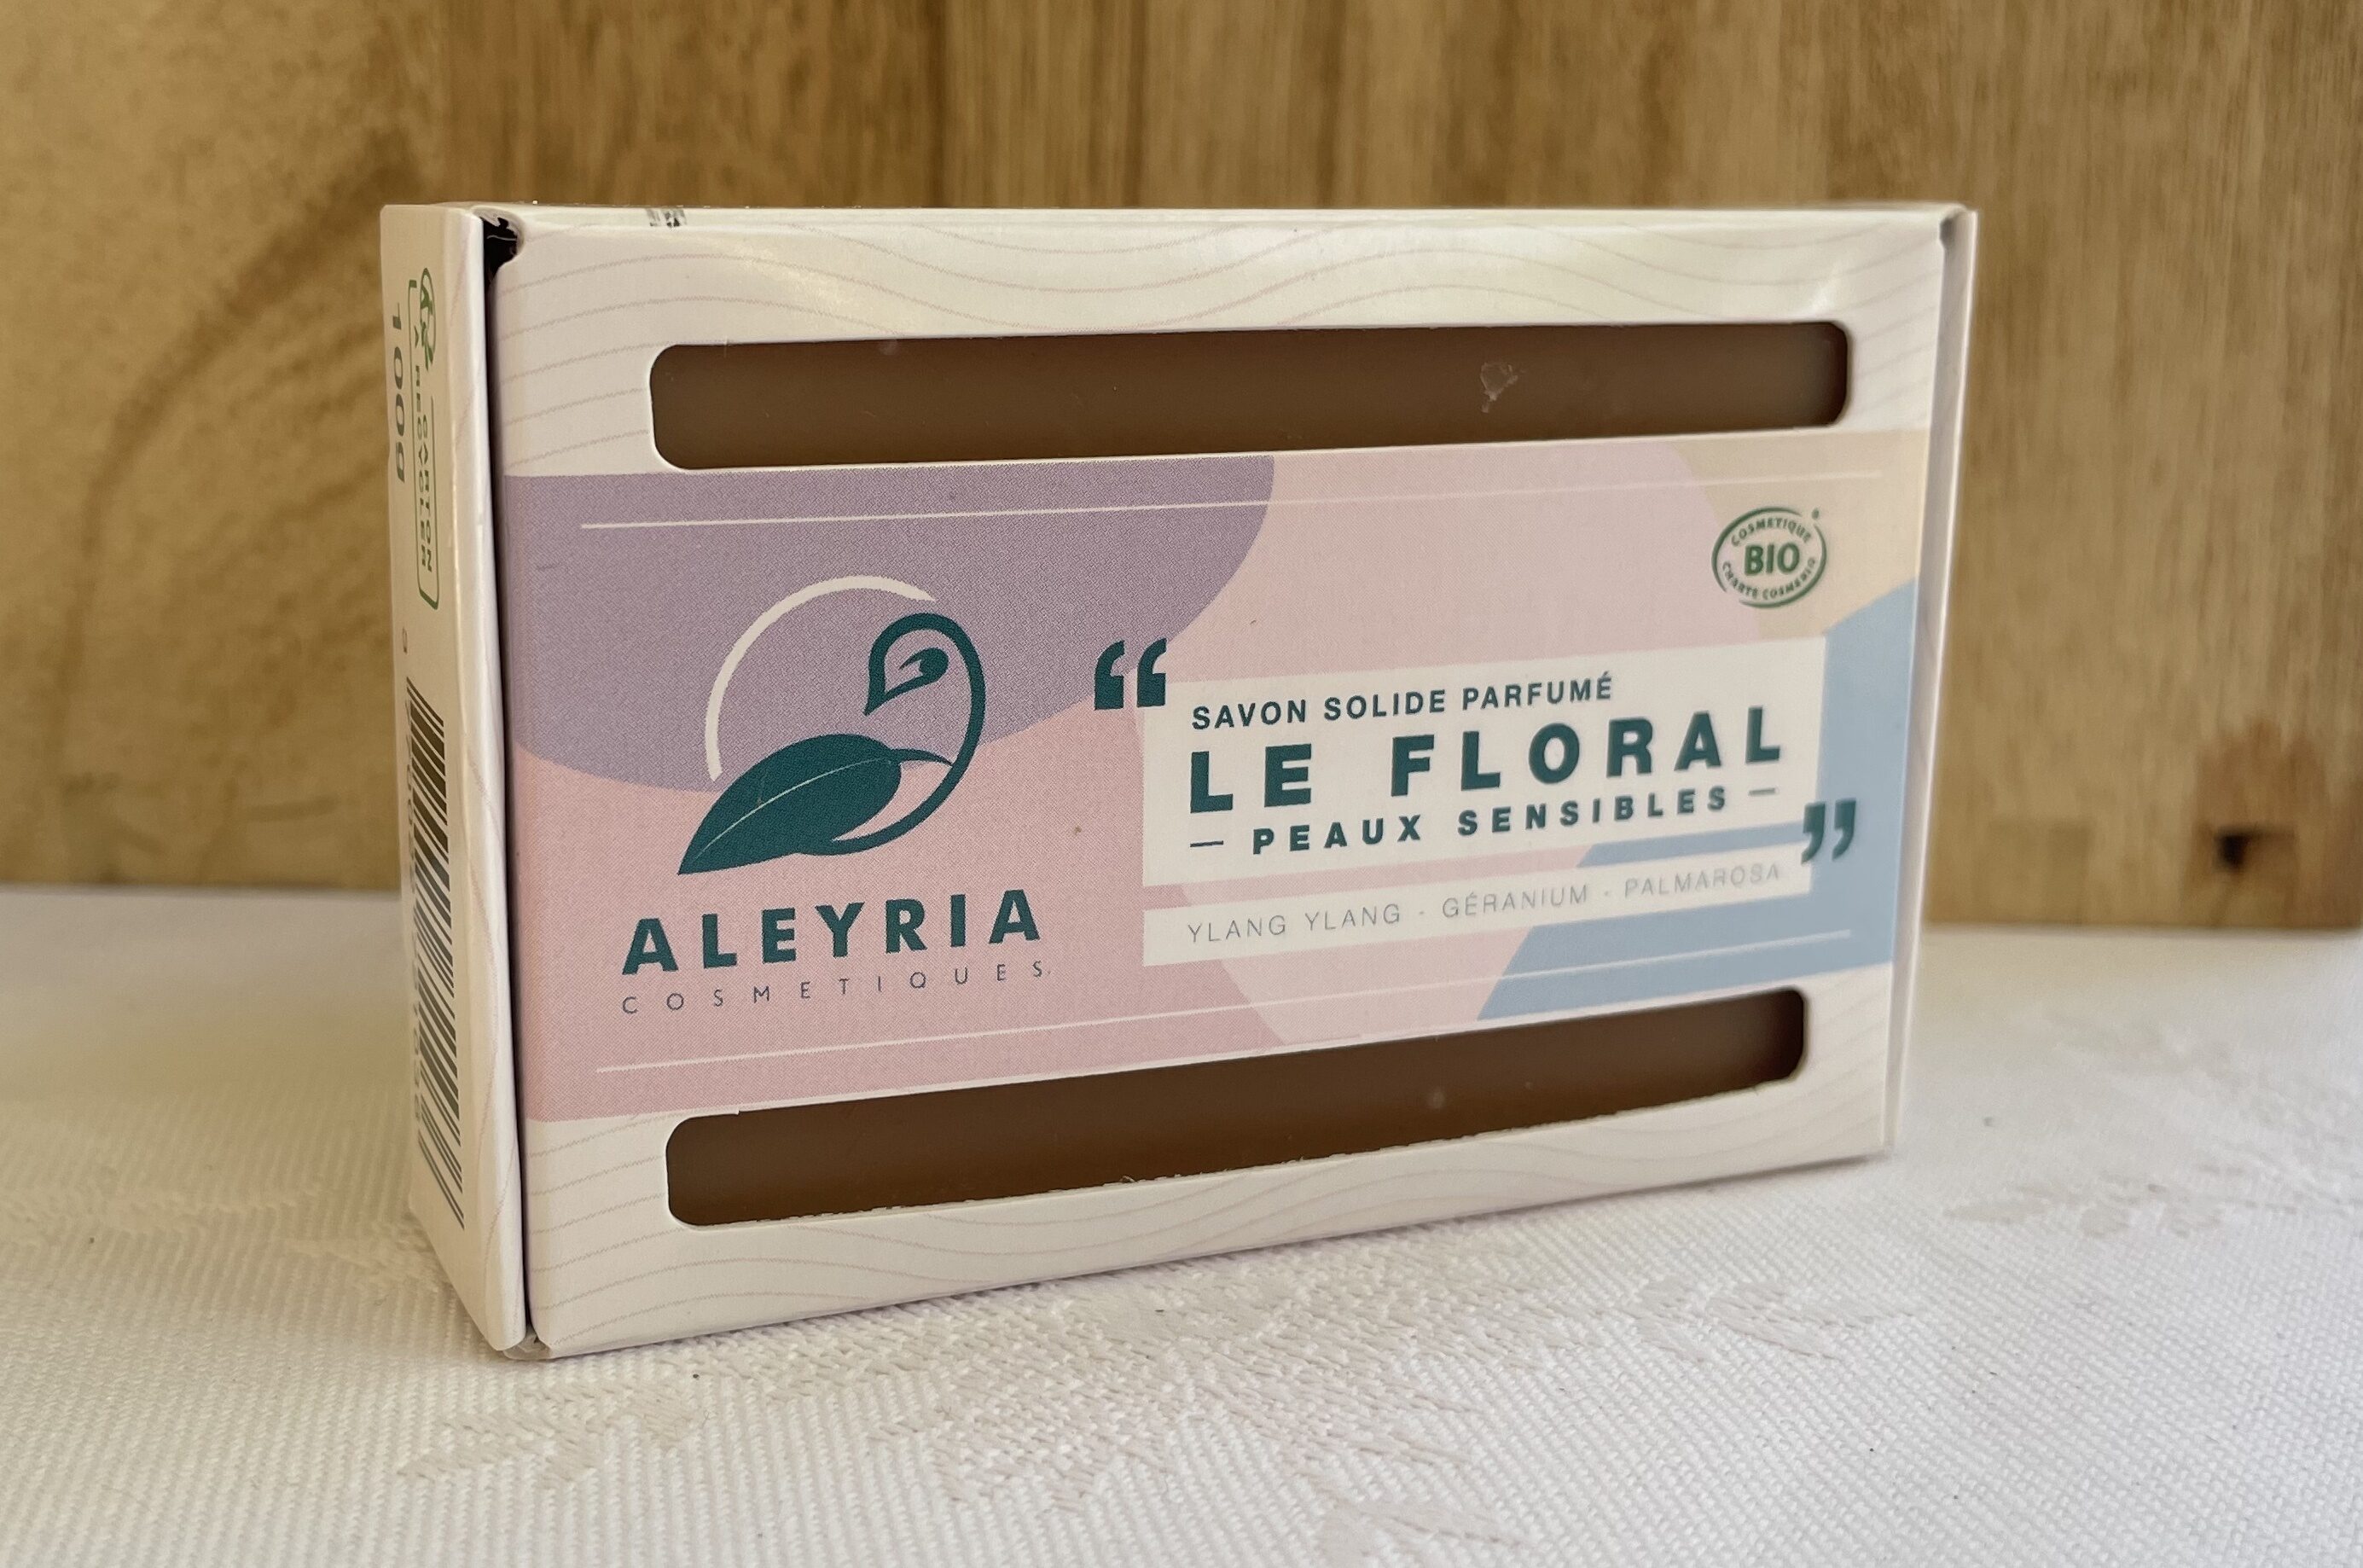 Savon solide Le floral peaux sensibles - Aleyria Cosmétiques - Produit - fr